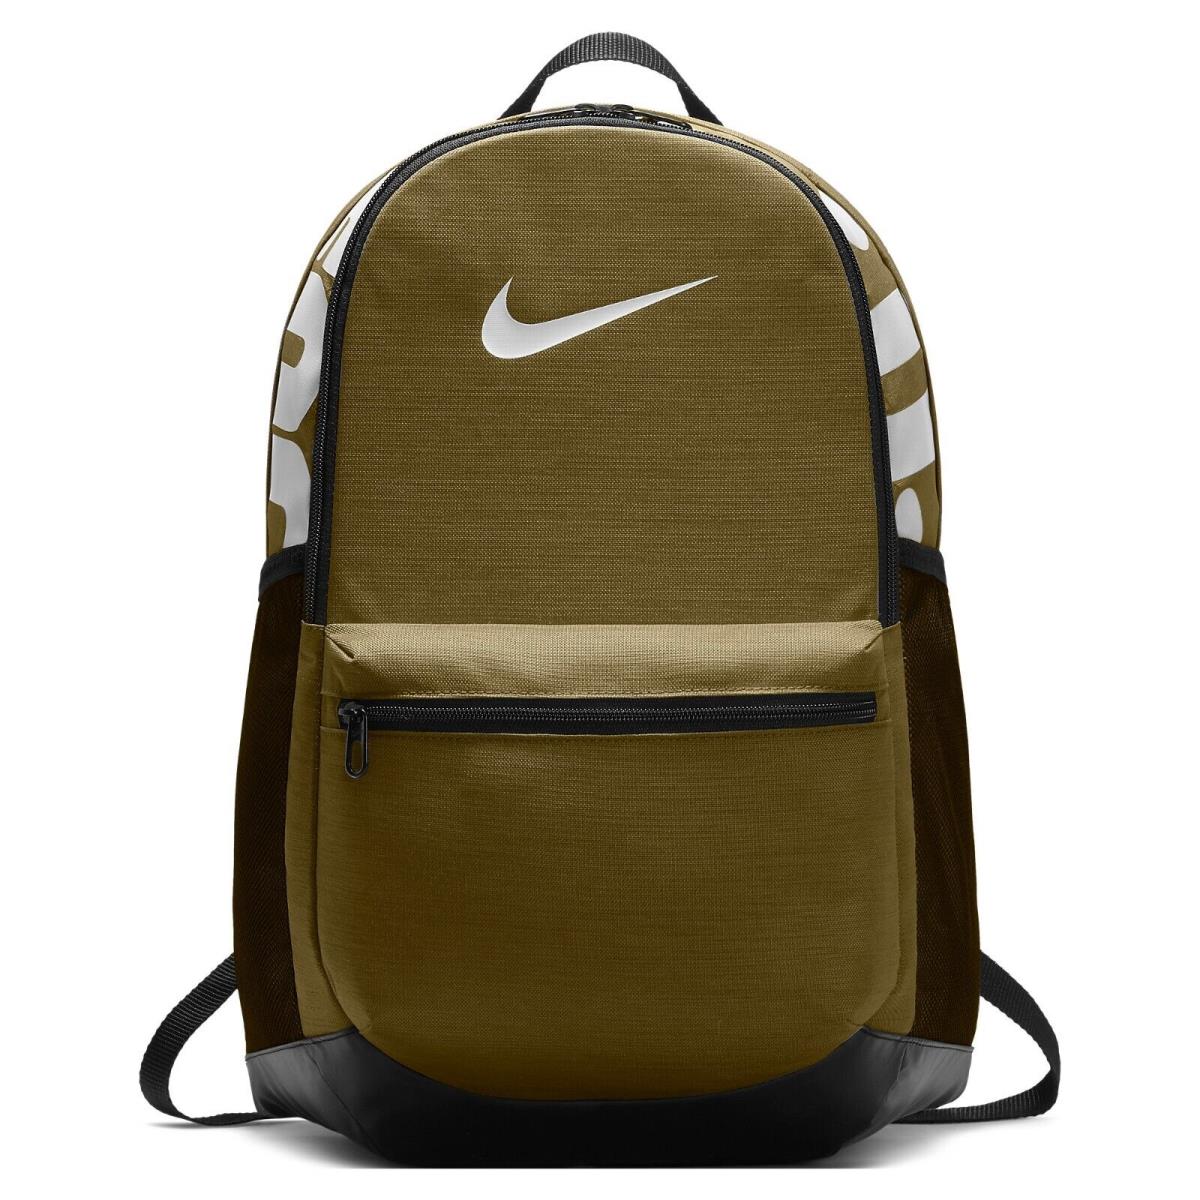 Nike Brasilia Medium Training Backpack BA5329-399 Olive/black/white 1465 CU - Olive/Black/White